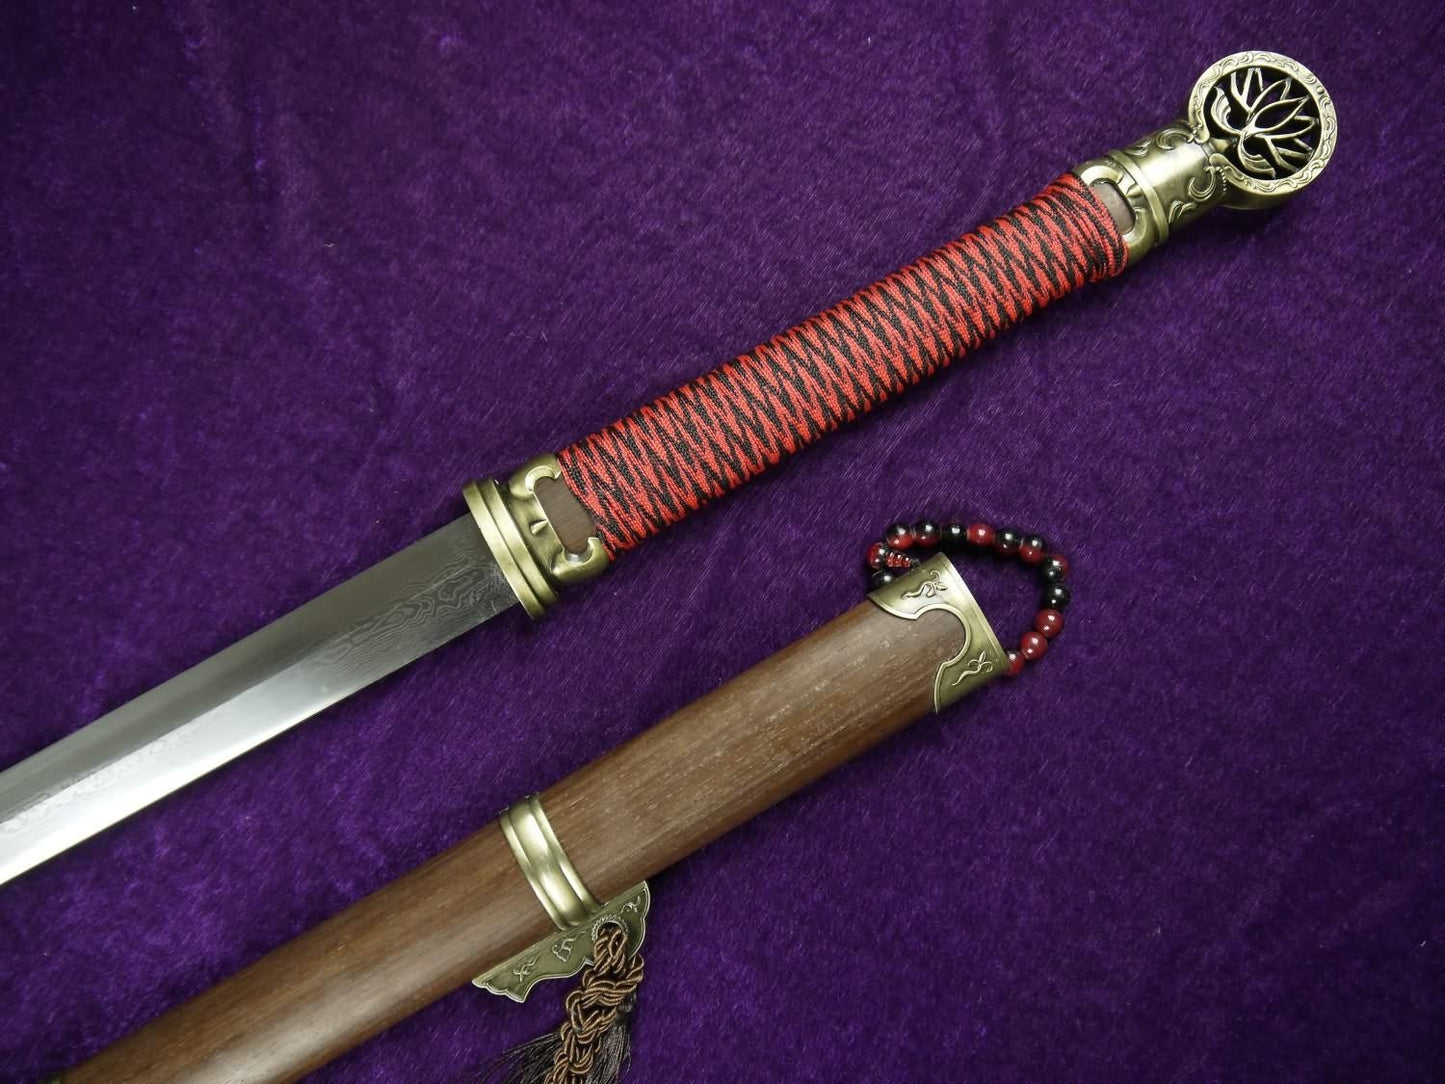 Han jian/Pei Dong jian/Damascus steel blade/Rosewood scabbard - Chinese sword shop